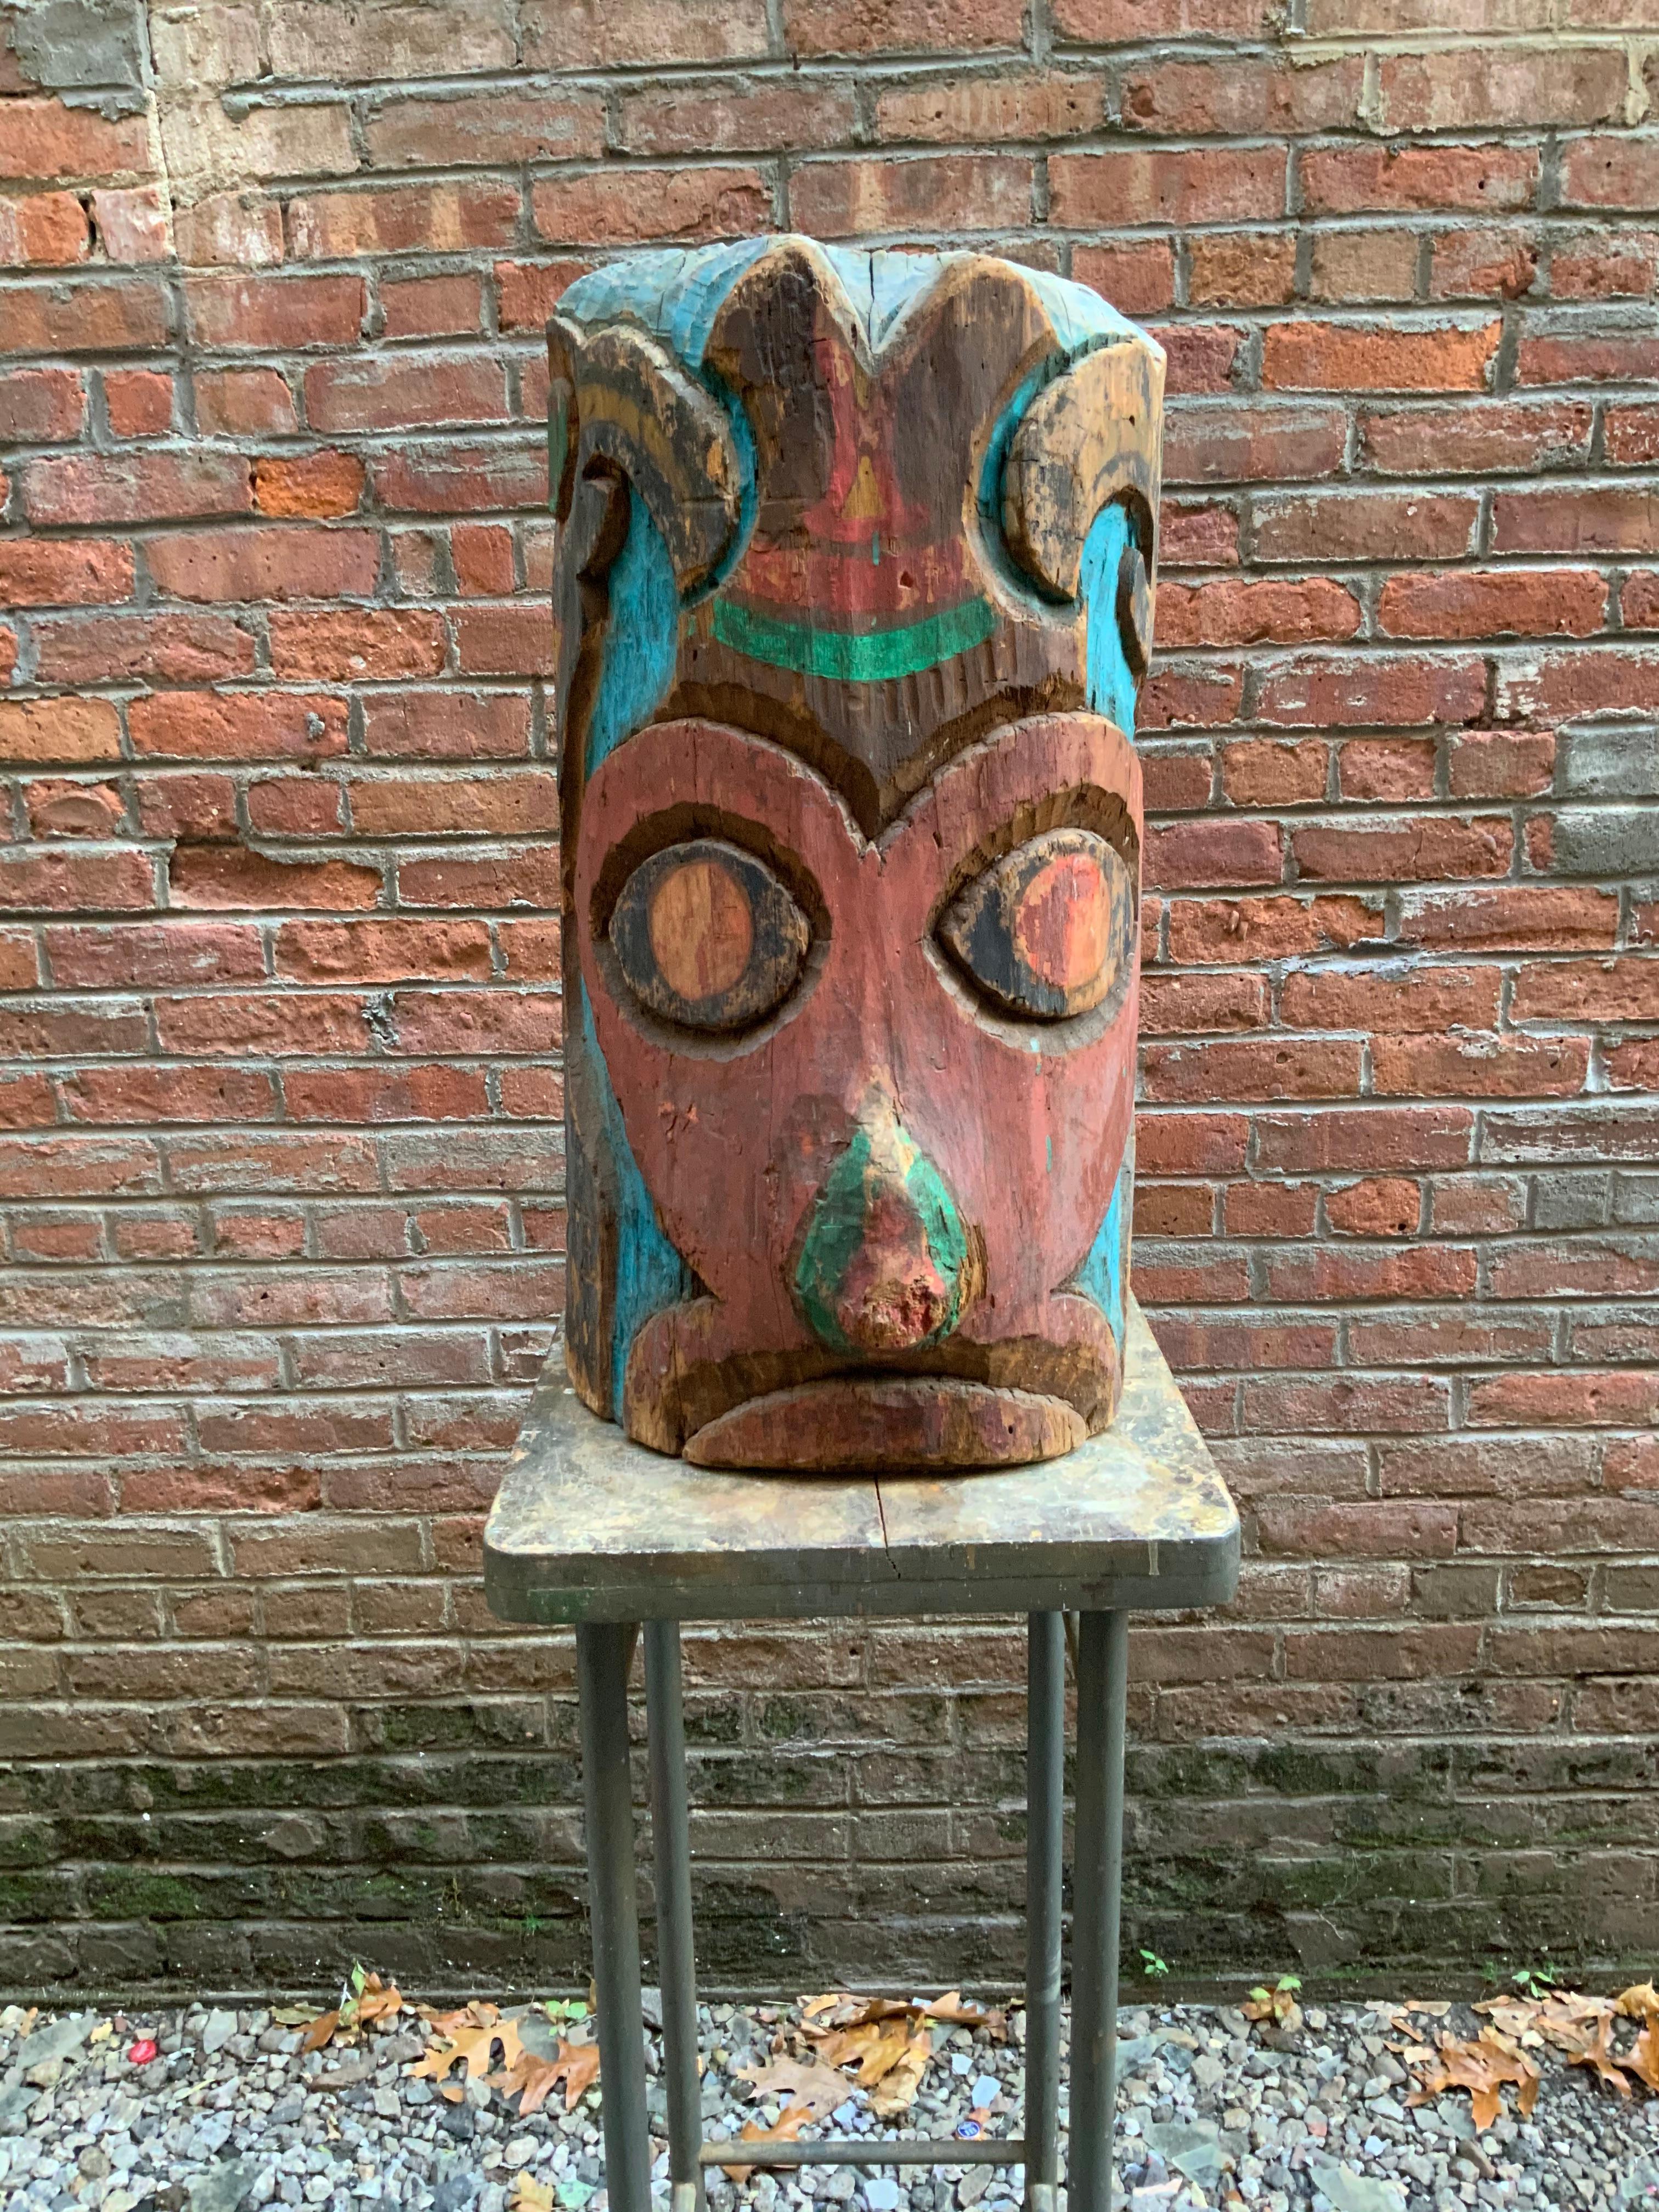 Paraphiert und datiert, CF 1937, geschnitzt und bemalt Pazifischer Nordwesten Native American TOTEM. Die geschnitzte Dekoration ist ein Hinweis auf den Stil und die Art und Weise der TOTEM-Schnitzer in Washington State oder Britisch-Kolumbien.